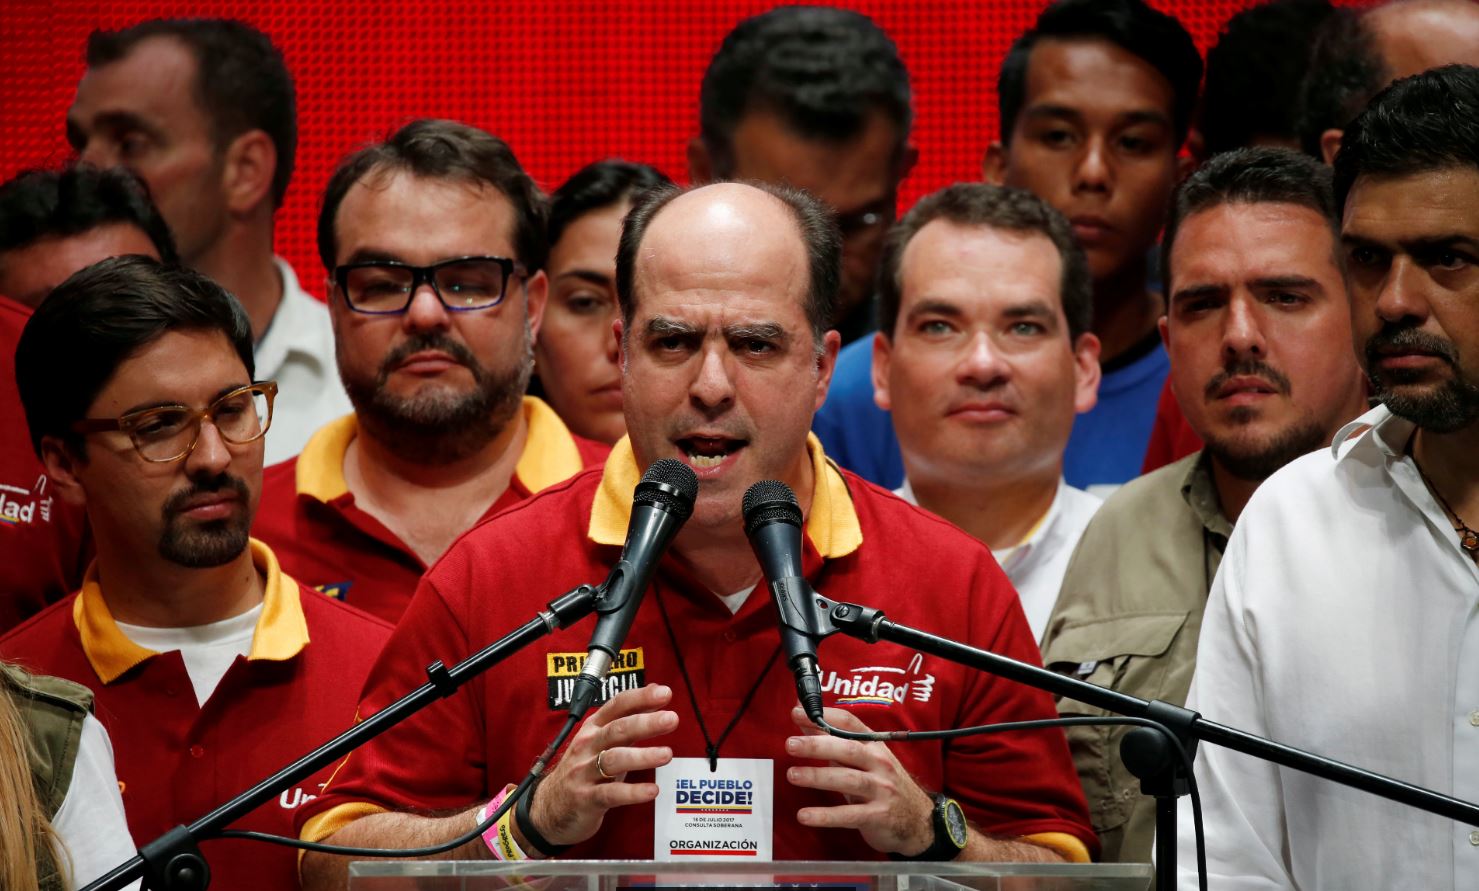 Nicolas Maduro, Julio Borges, Revocado, Plebiscito, Oposicion, Resultado, Presidente, Julio Borges, Constituyente